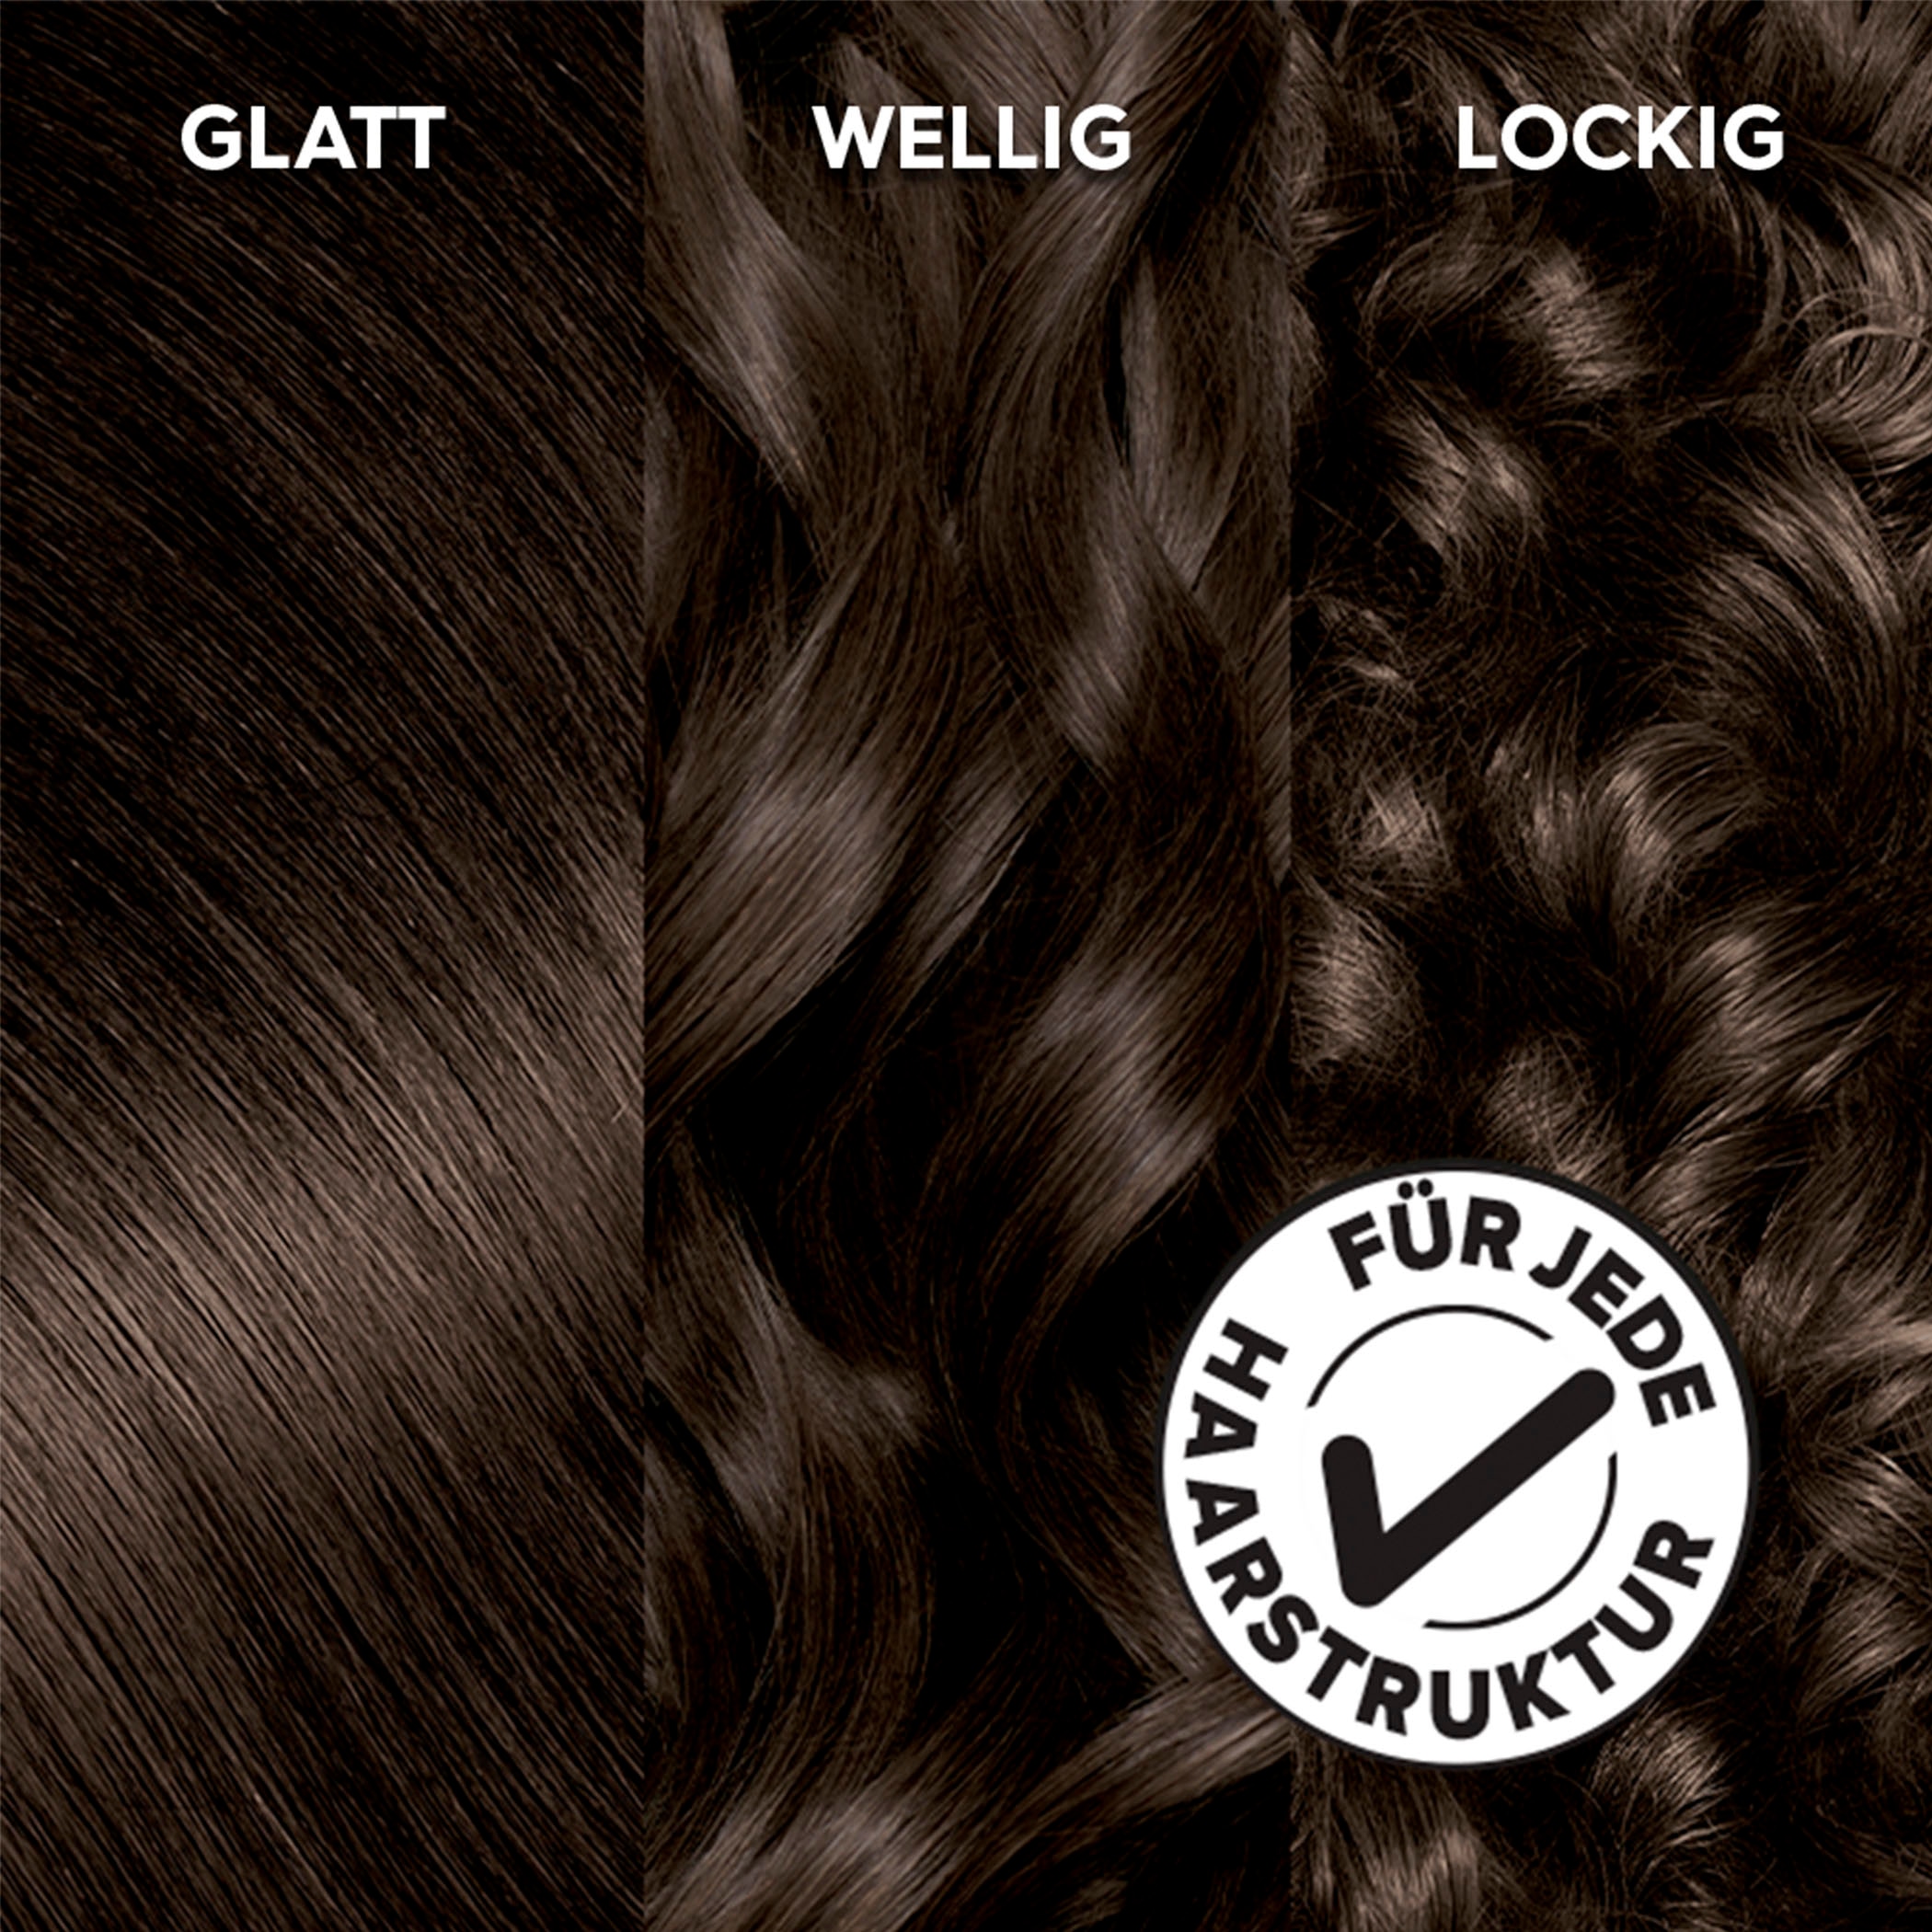 Coloration dauerhafte Ölbasis Haarfarbe«, Olia »Garnier GARNIER kaufen